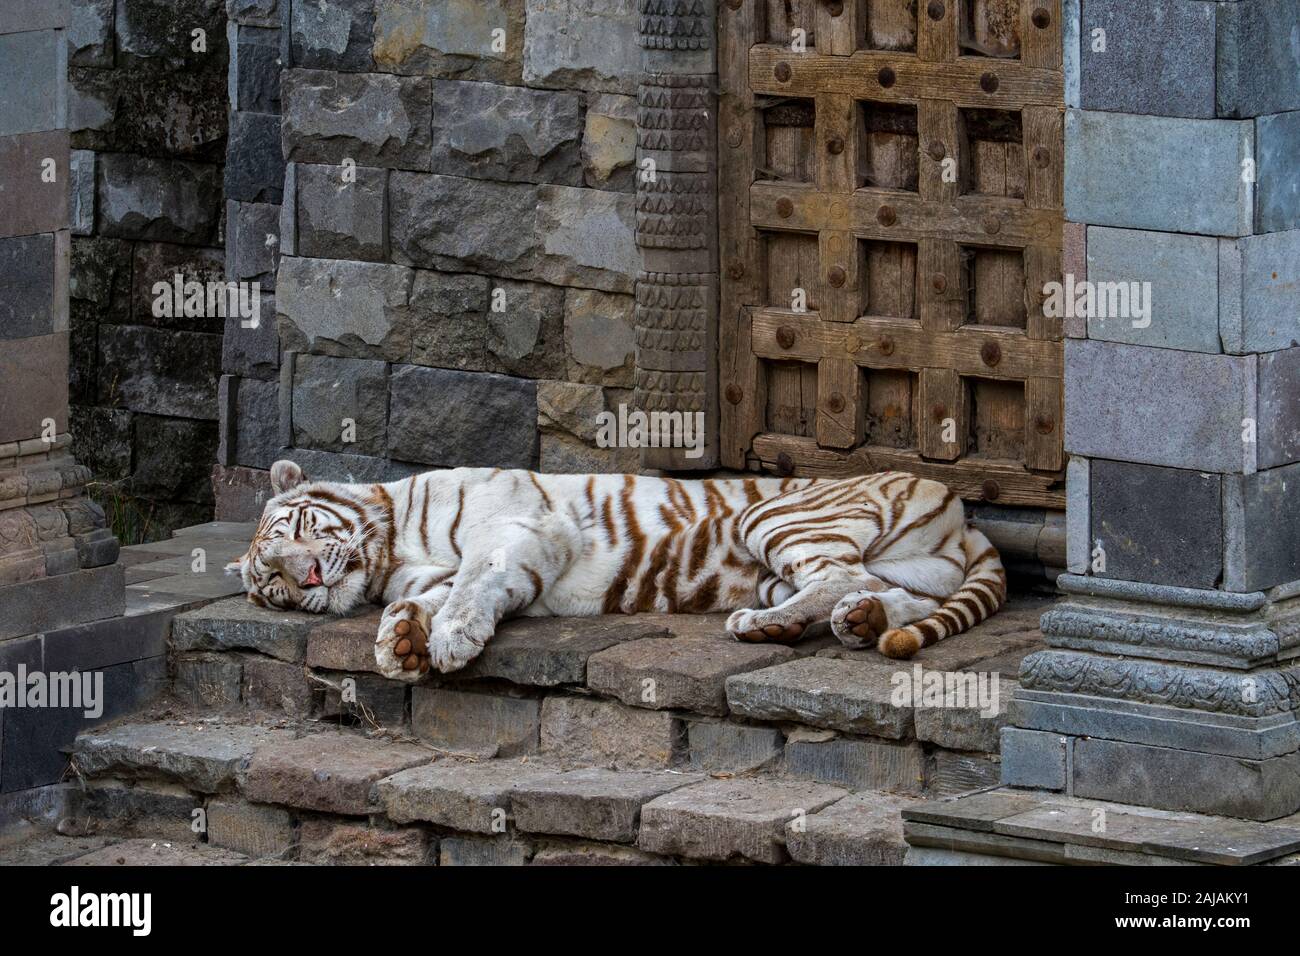 Weißer Tiger/gebleicht Tiger (Panthera tigris) Pigmentierung Variante des Bengalischen Tiger, Ruhe vor Temple, beheimatet in Indien Stockfoto